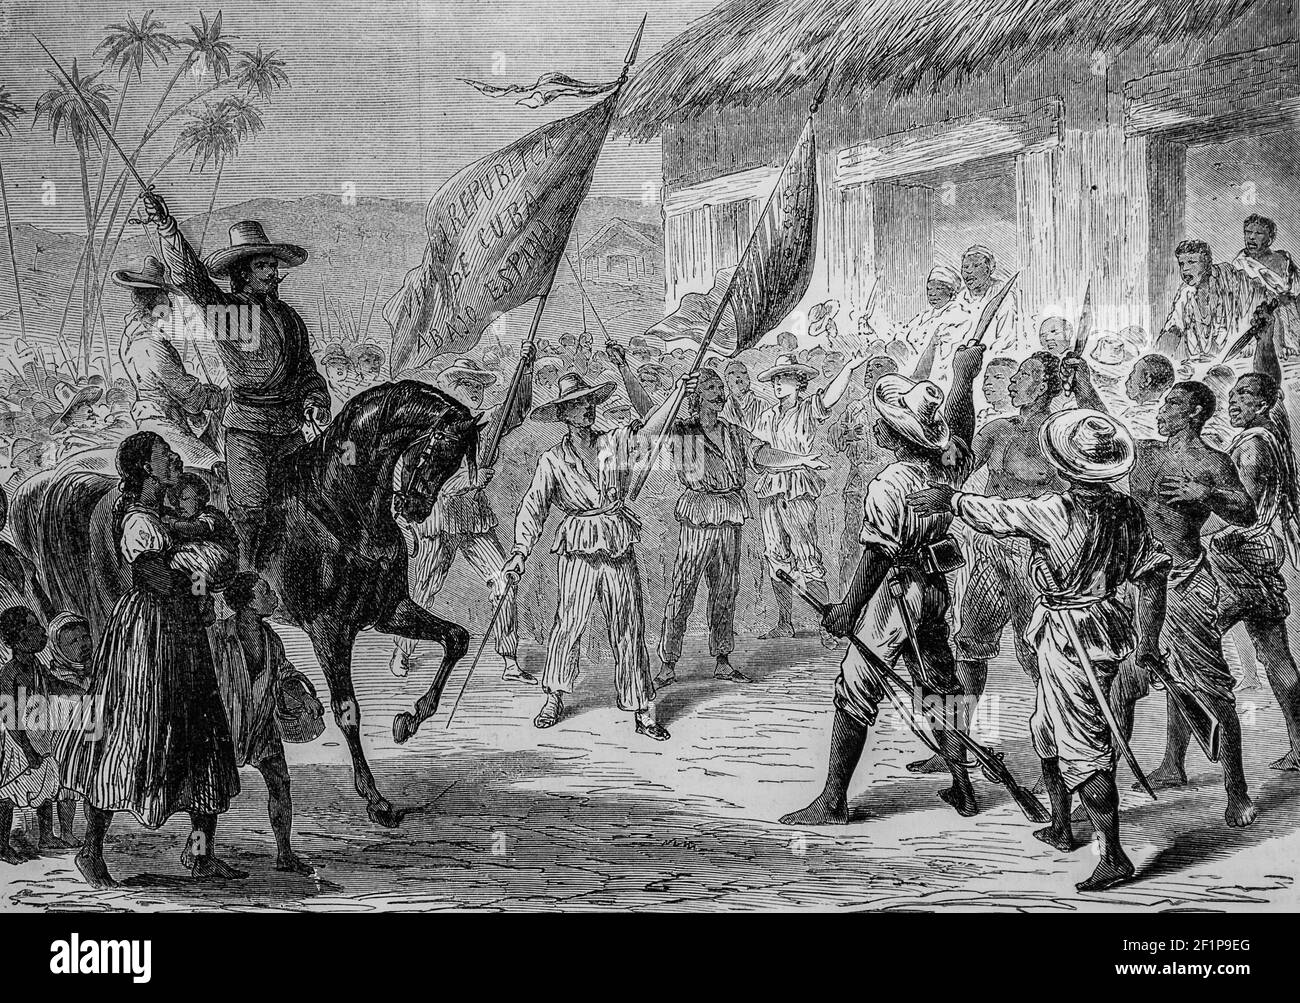 evenement de cuba les creoles proclamant le gouvernement provisoire de l'ile, l'univers illustre,editeur michele levy 1869 Stock Photo